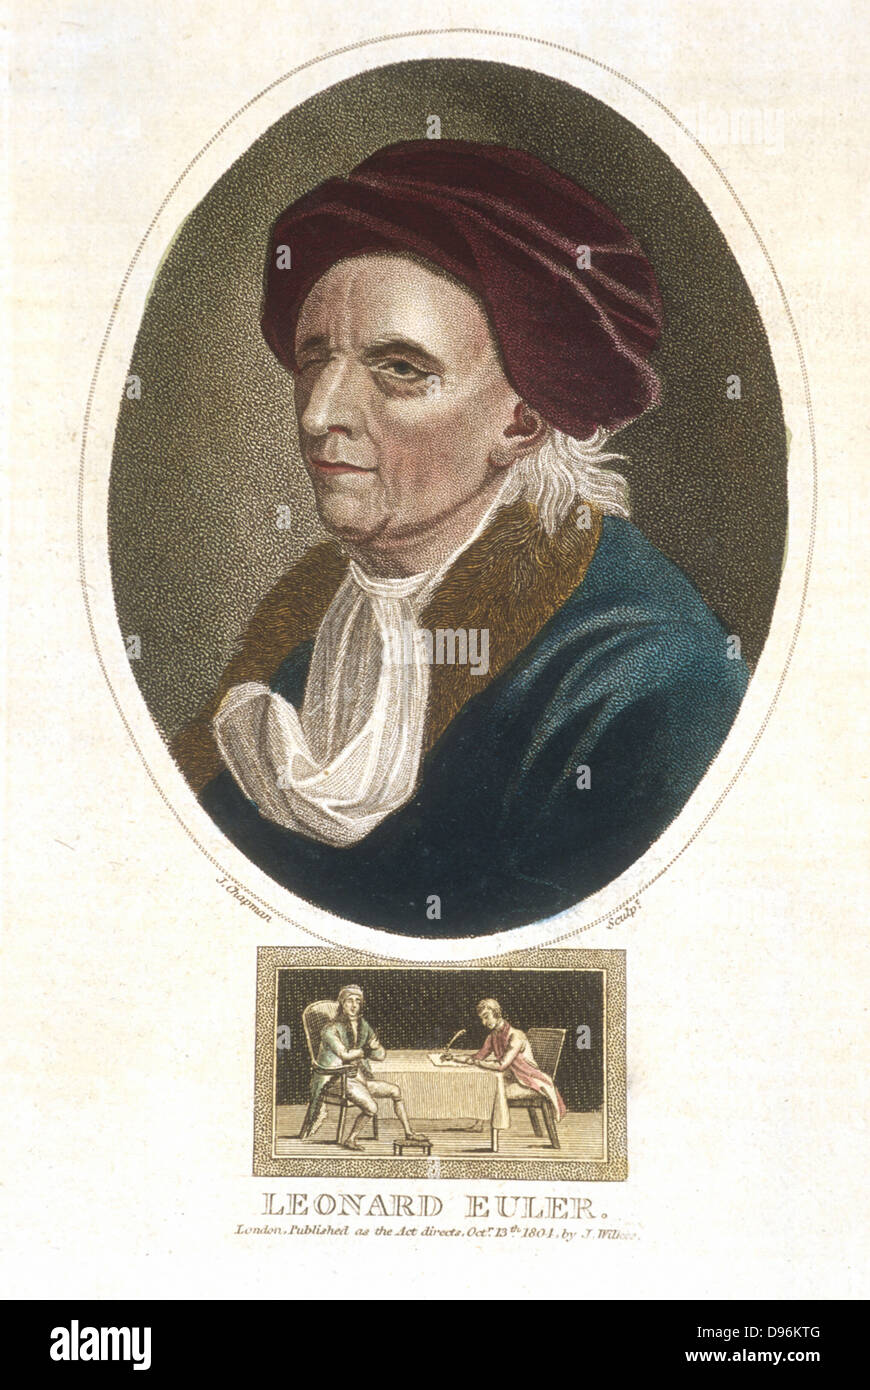 Leonhard (1707-1783) Euler. Matematico svizzero. Colorate a mano incisione, Londra, 1816. Foto Stock